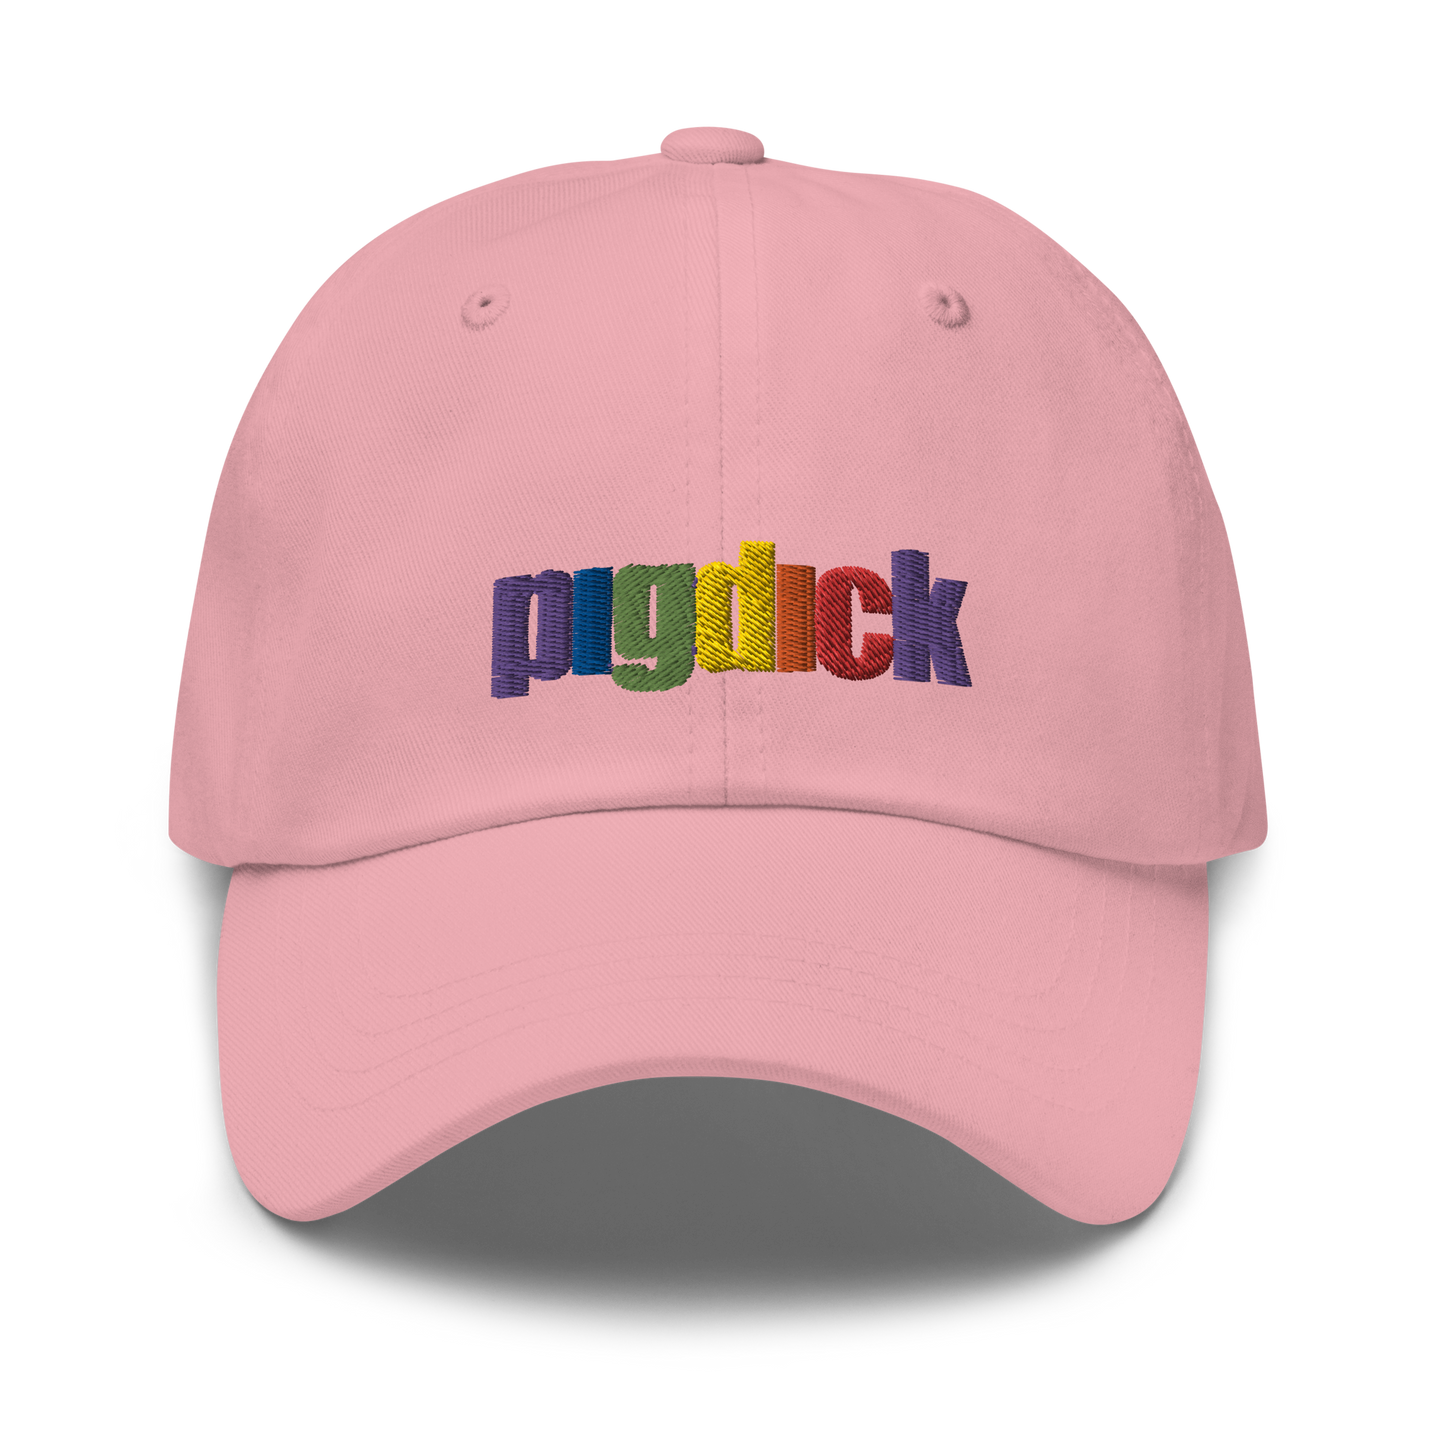 PigDick Dad hat